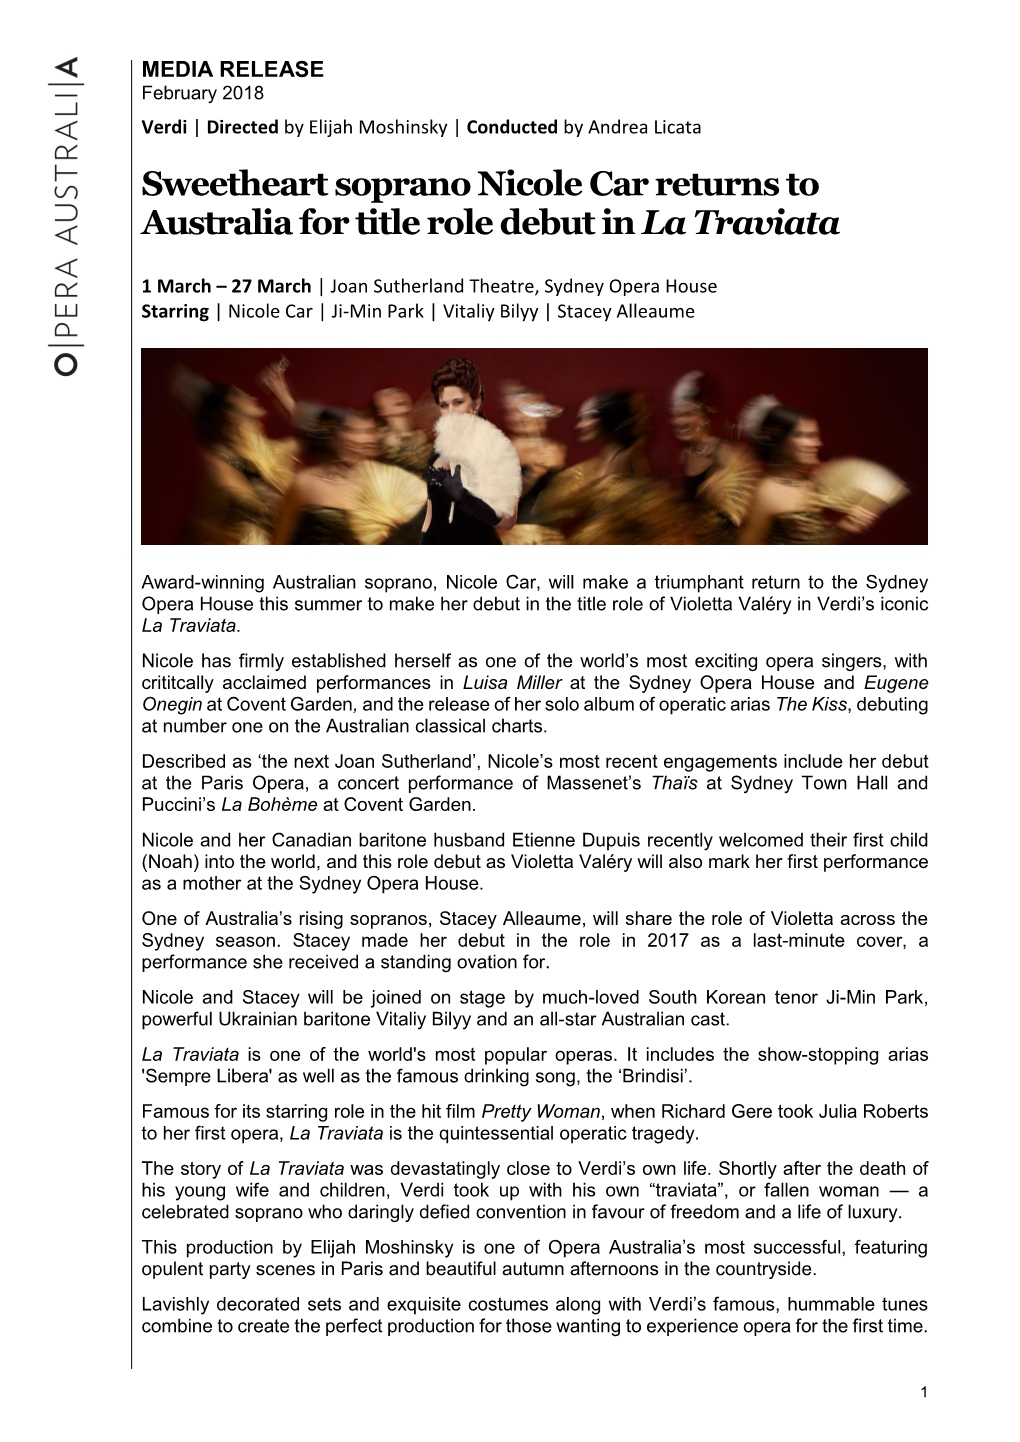 Sweetheart Soprano Nicole Car Returns to Australia for Title Role Debut in La Traviata